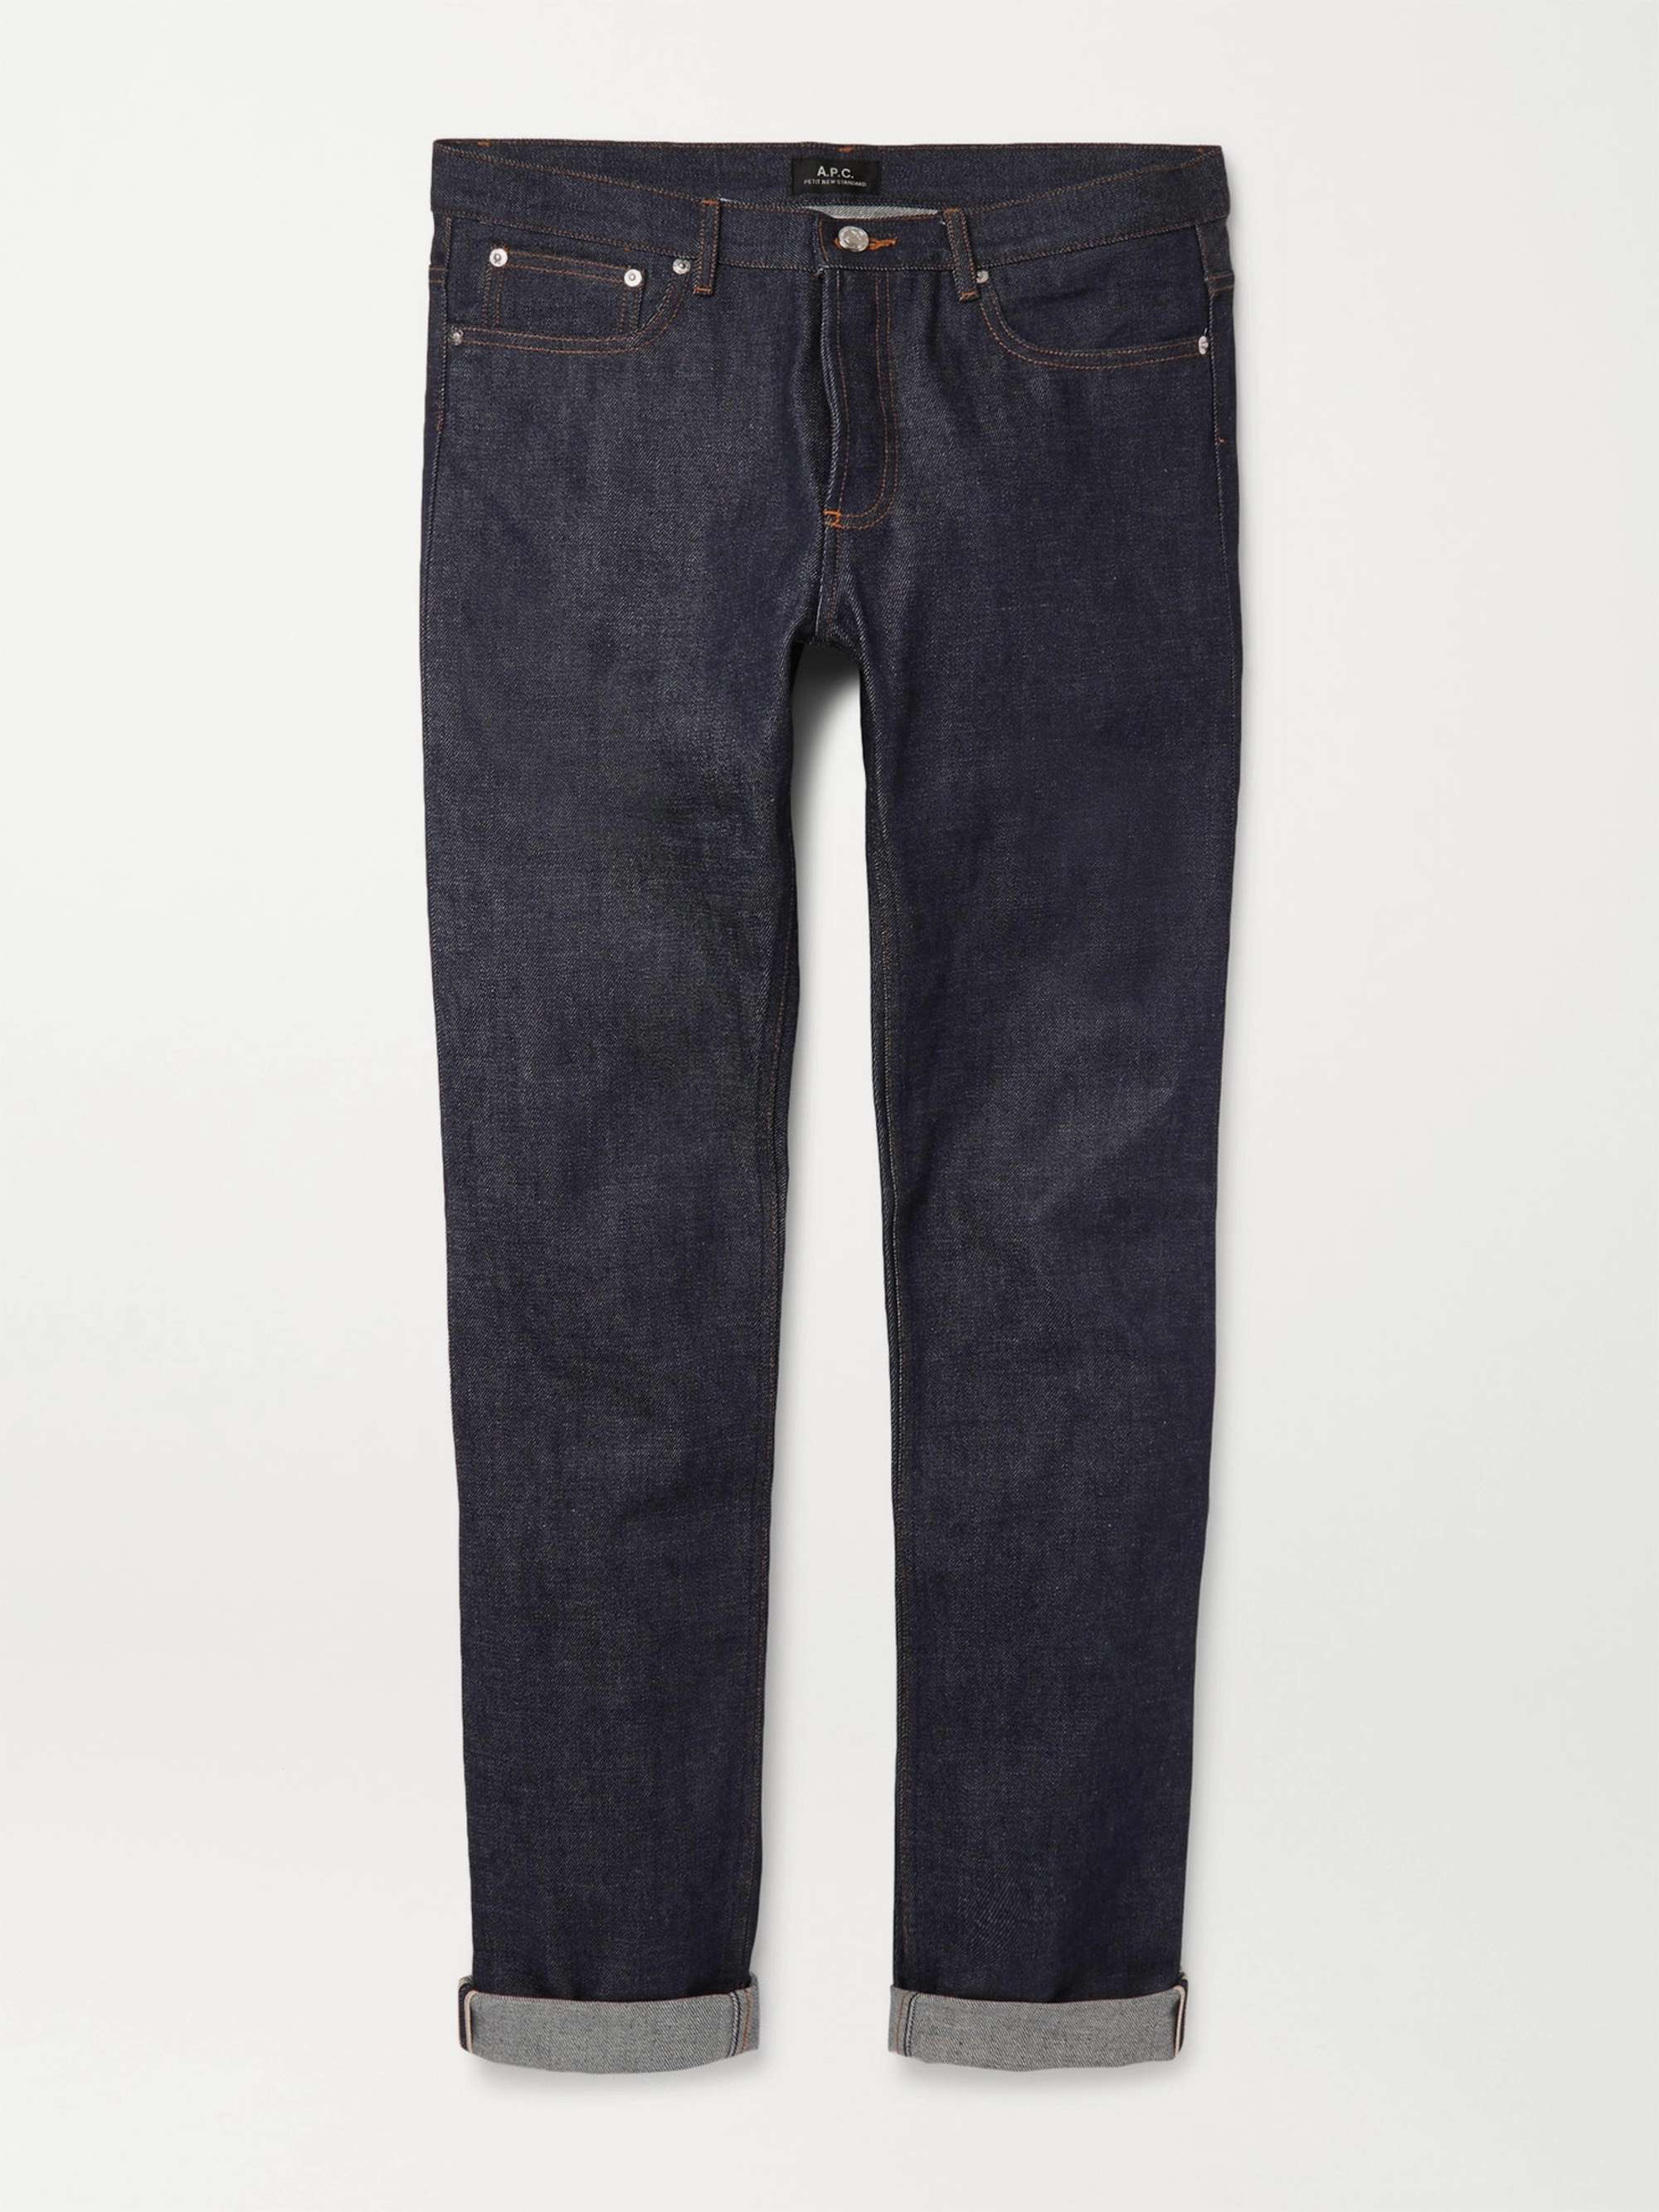 아페쎄 남성 청바지 (쁘띠 스키니핏 슬림핏) A.P.C. Petit New Standard Skinny-Fit Dry Selvedge Denim Jeans,Indigo